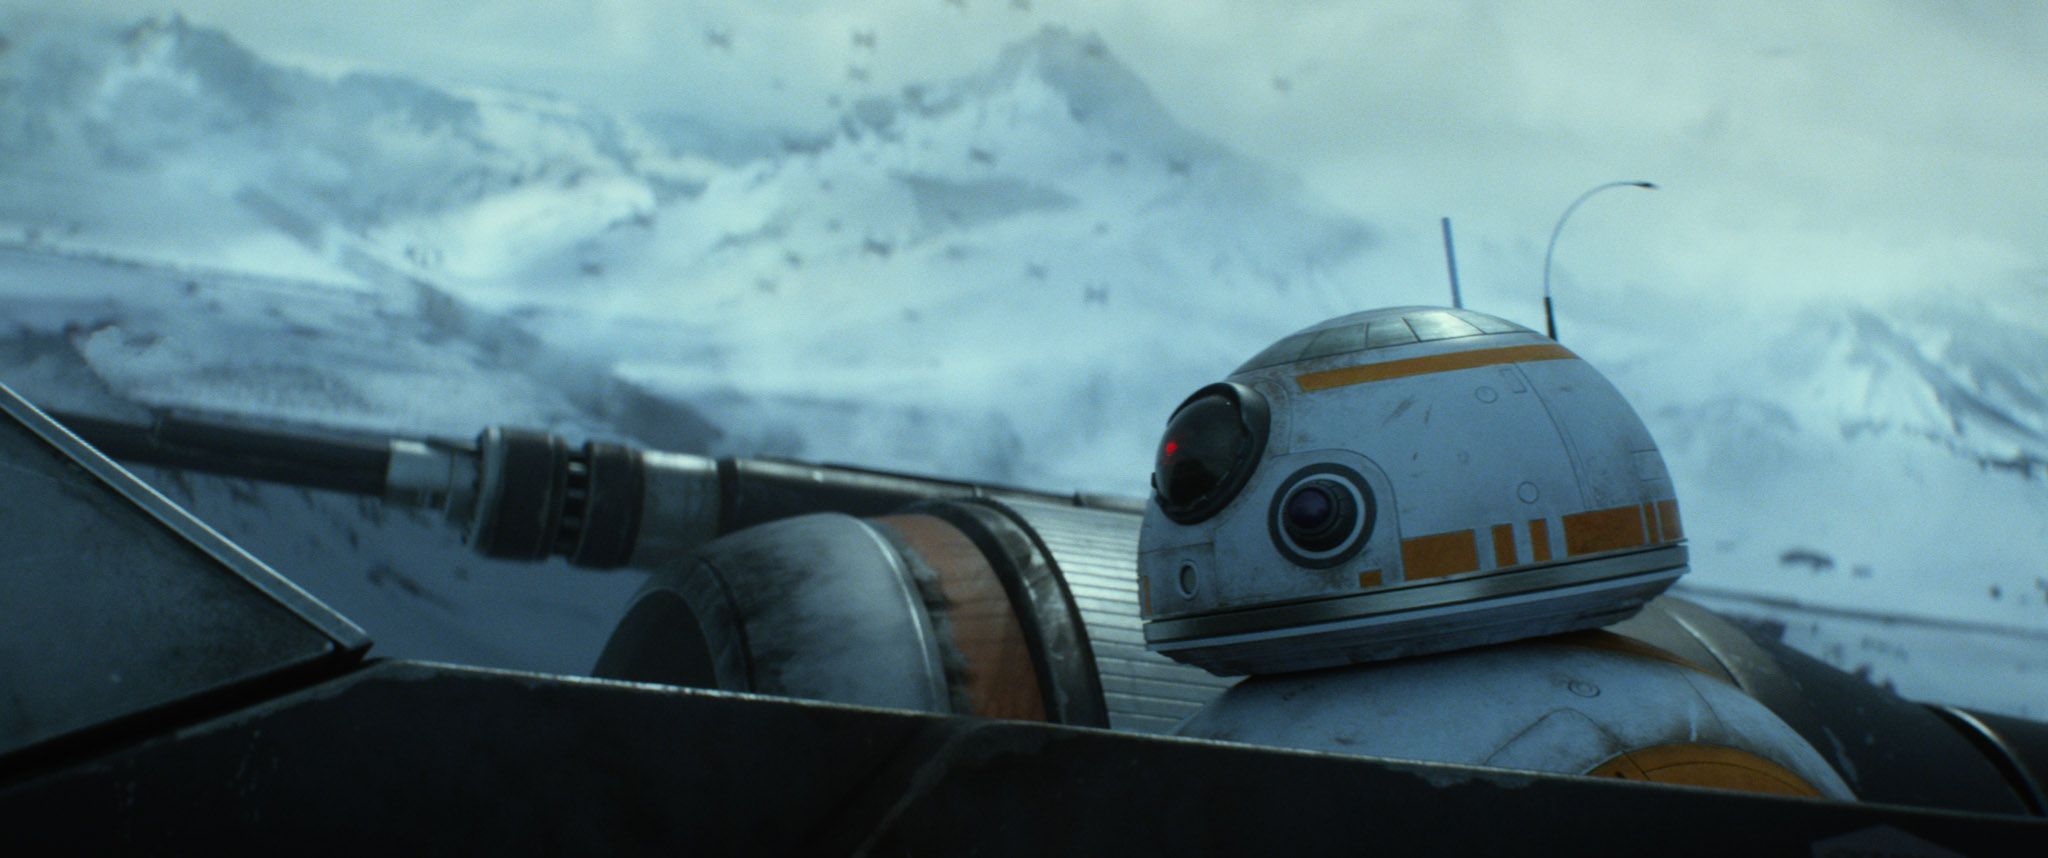 Star Wars 7 Trailer #3 - Starkiller Ice Planet BB-8